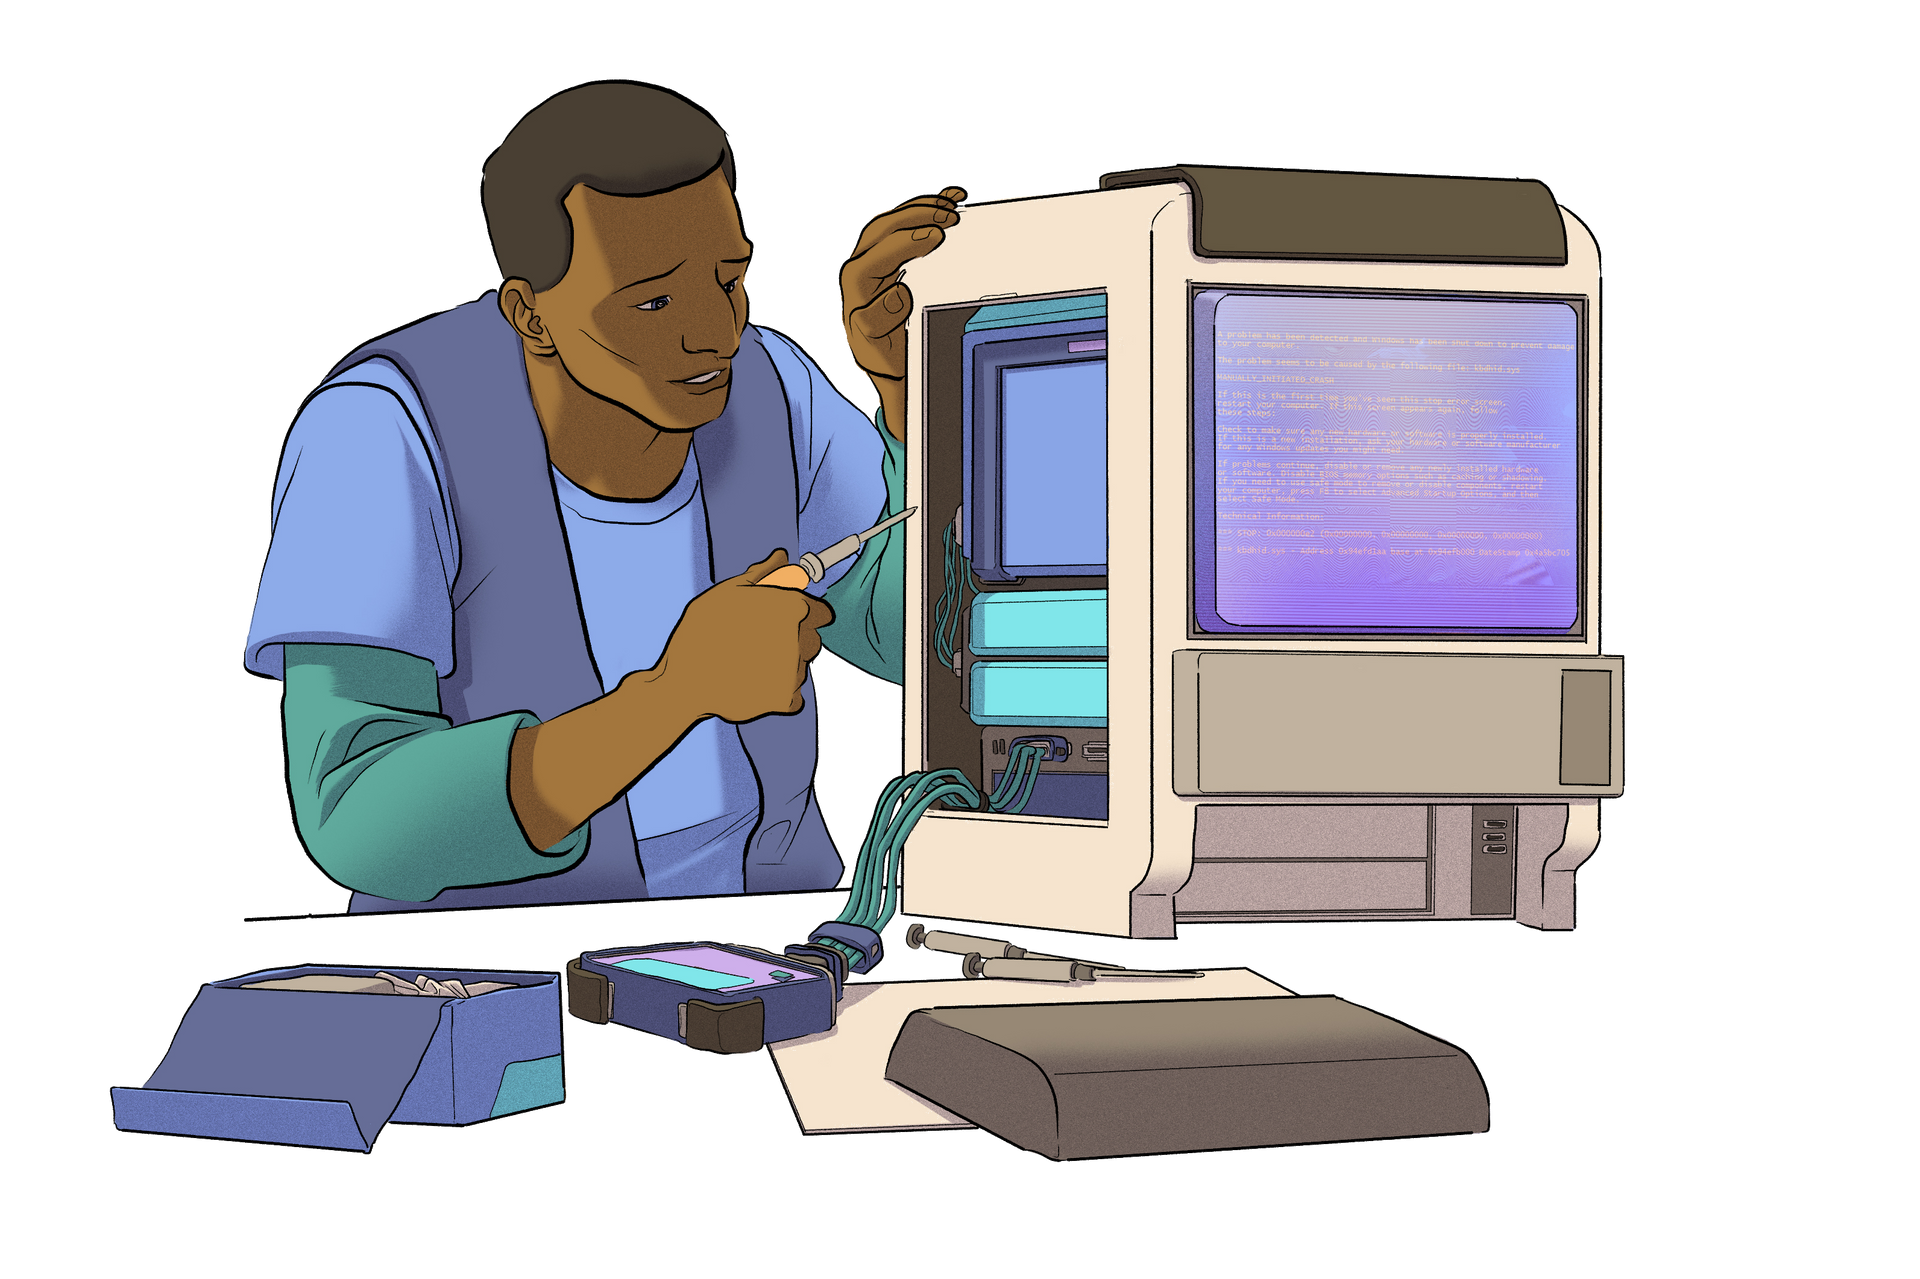 Иллюстрация человека, работающего на компьютере.